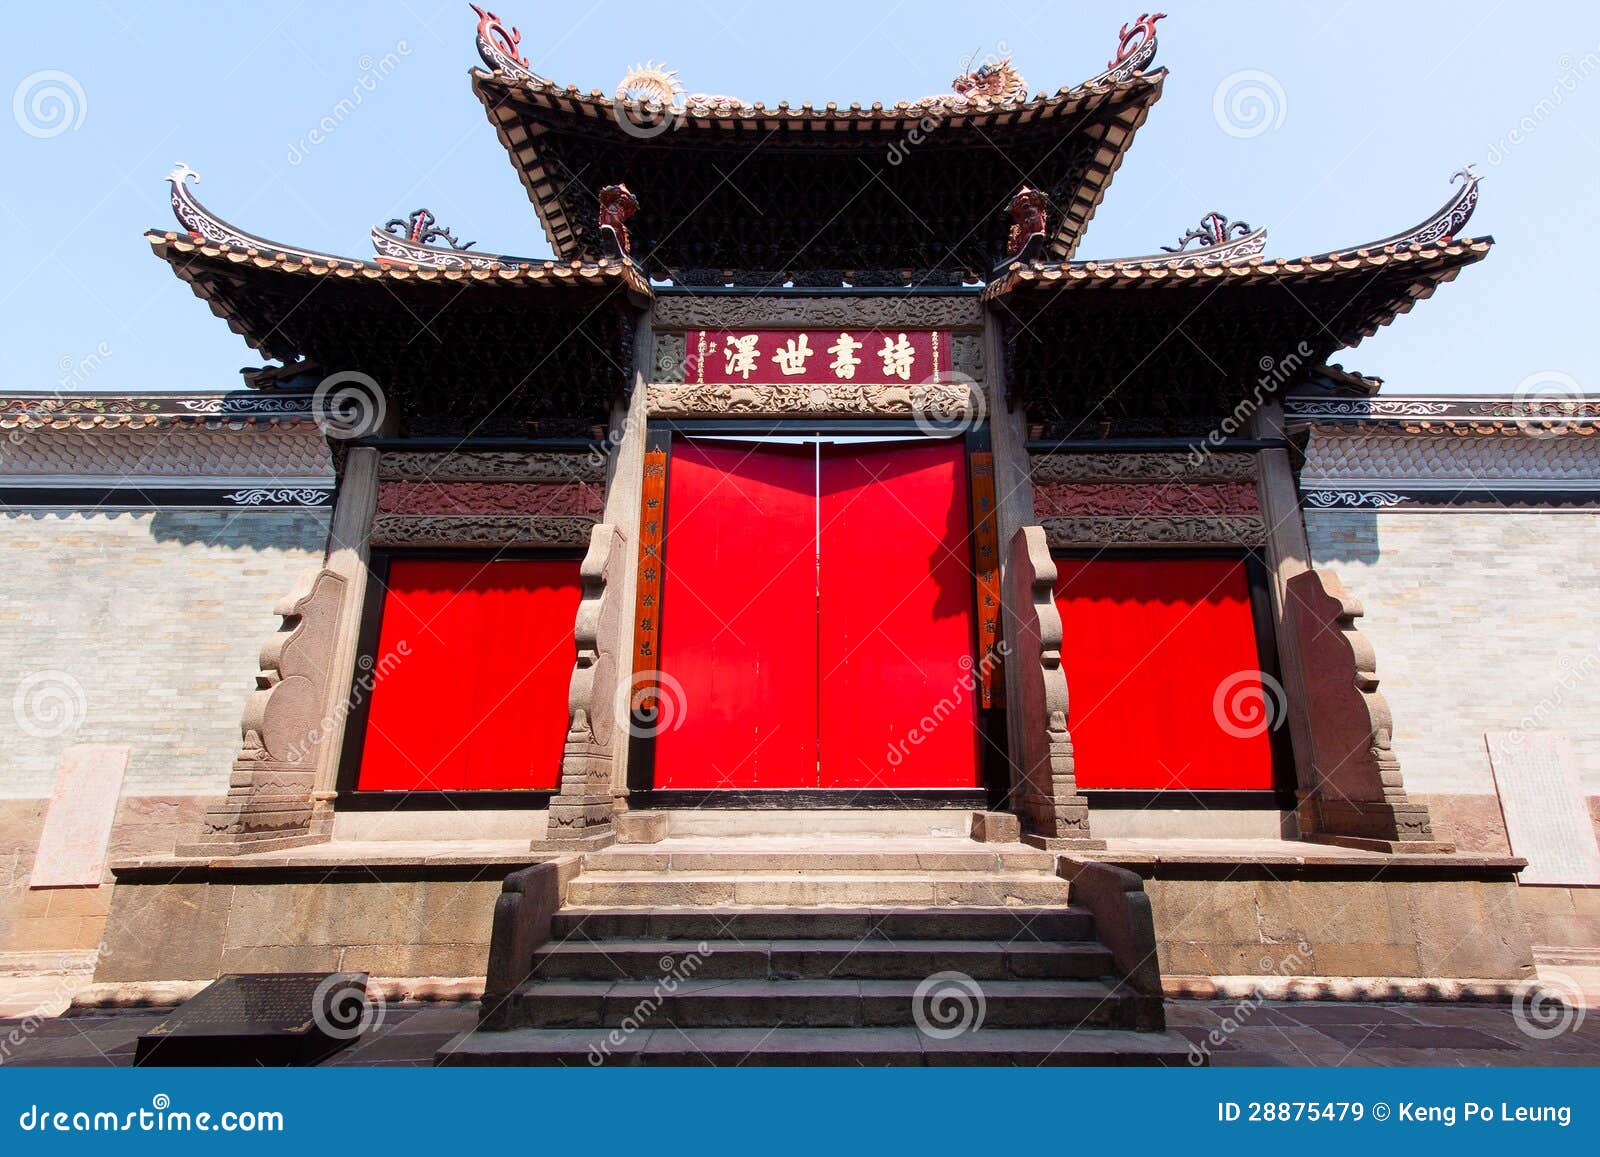 Двери в китайских домах. Двери в Китае. Двери китайских домов. Открытые двери в Китае. Возле двери в китайский домик.